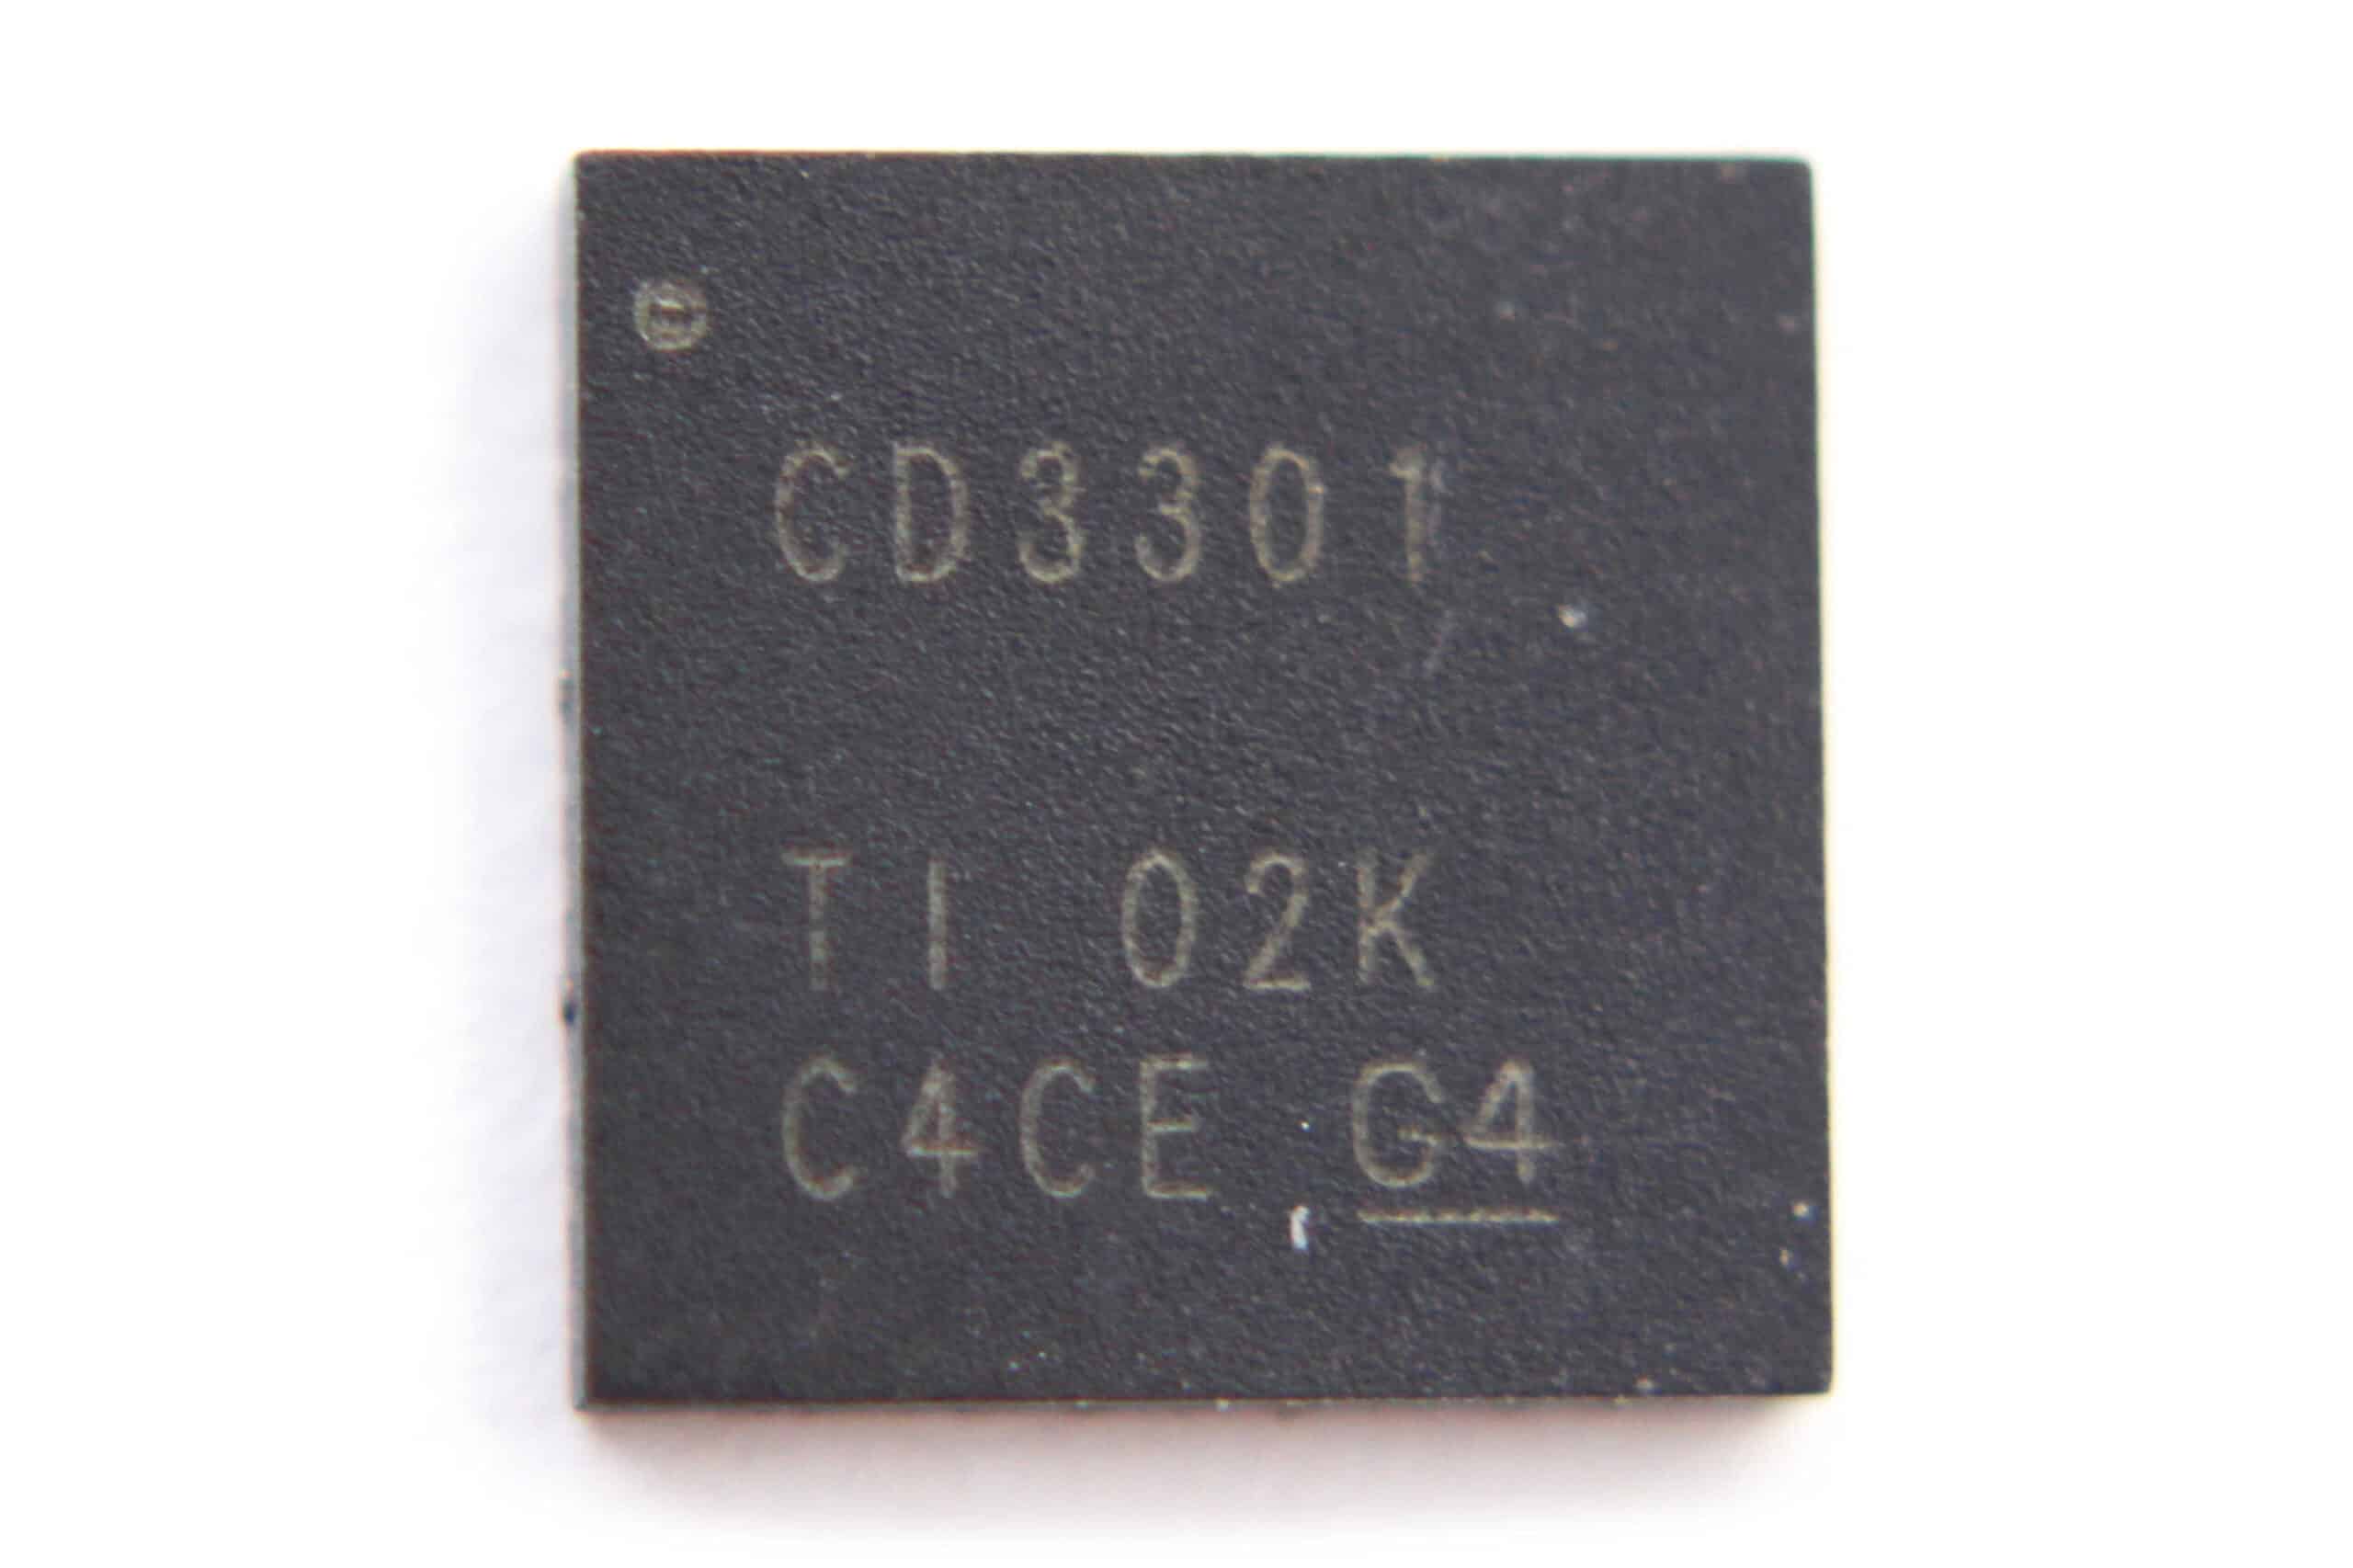 1pcs CD3301BRHHR CD3301B RHHR TI QFN 36pin Power IC Chip